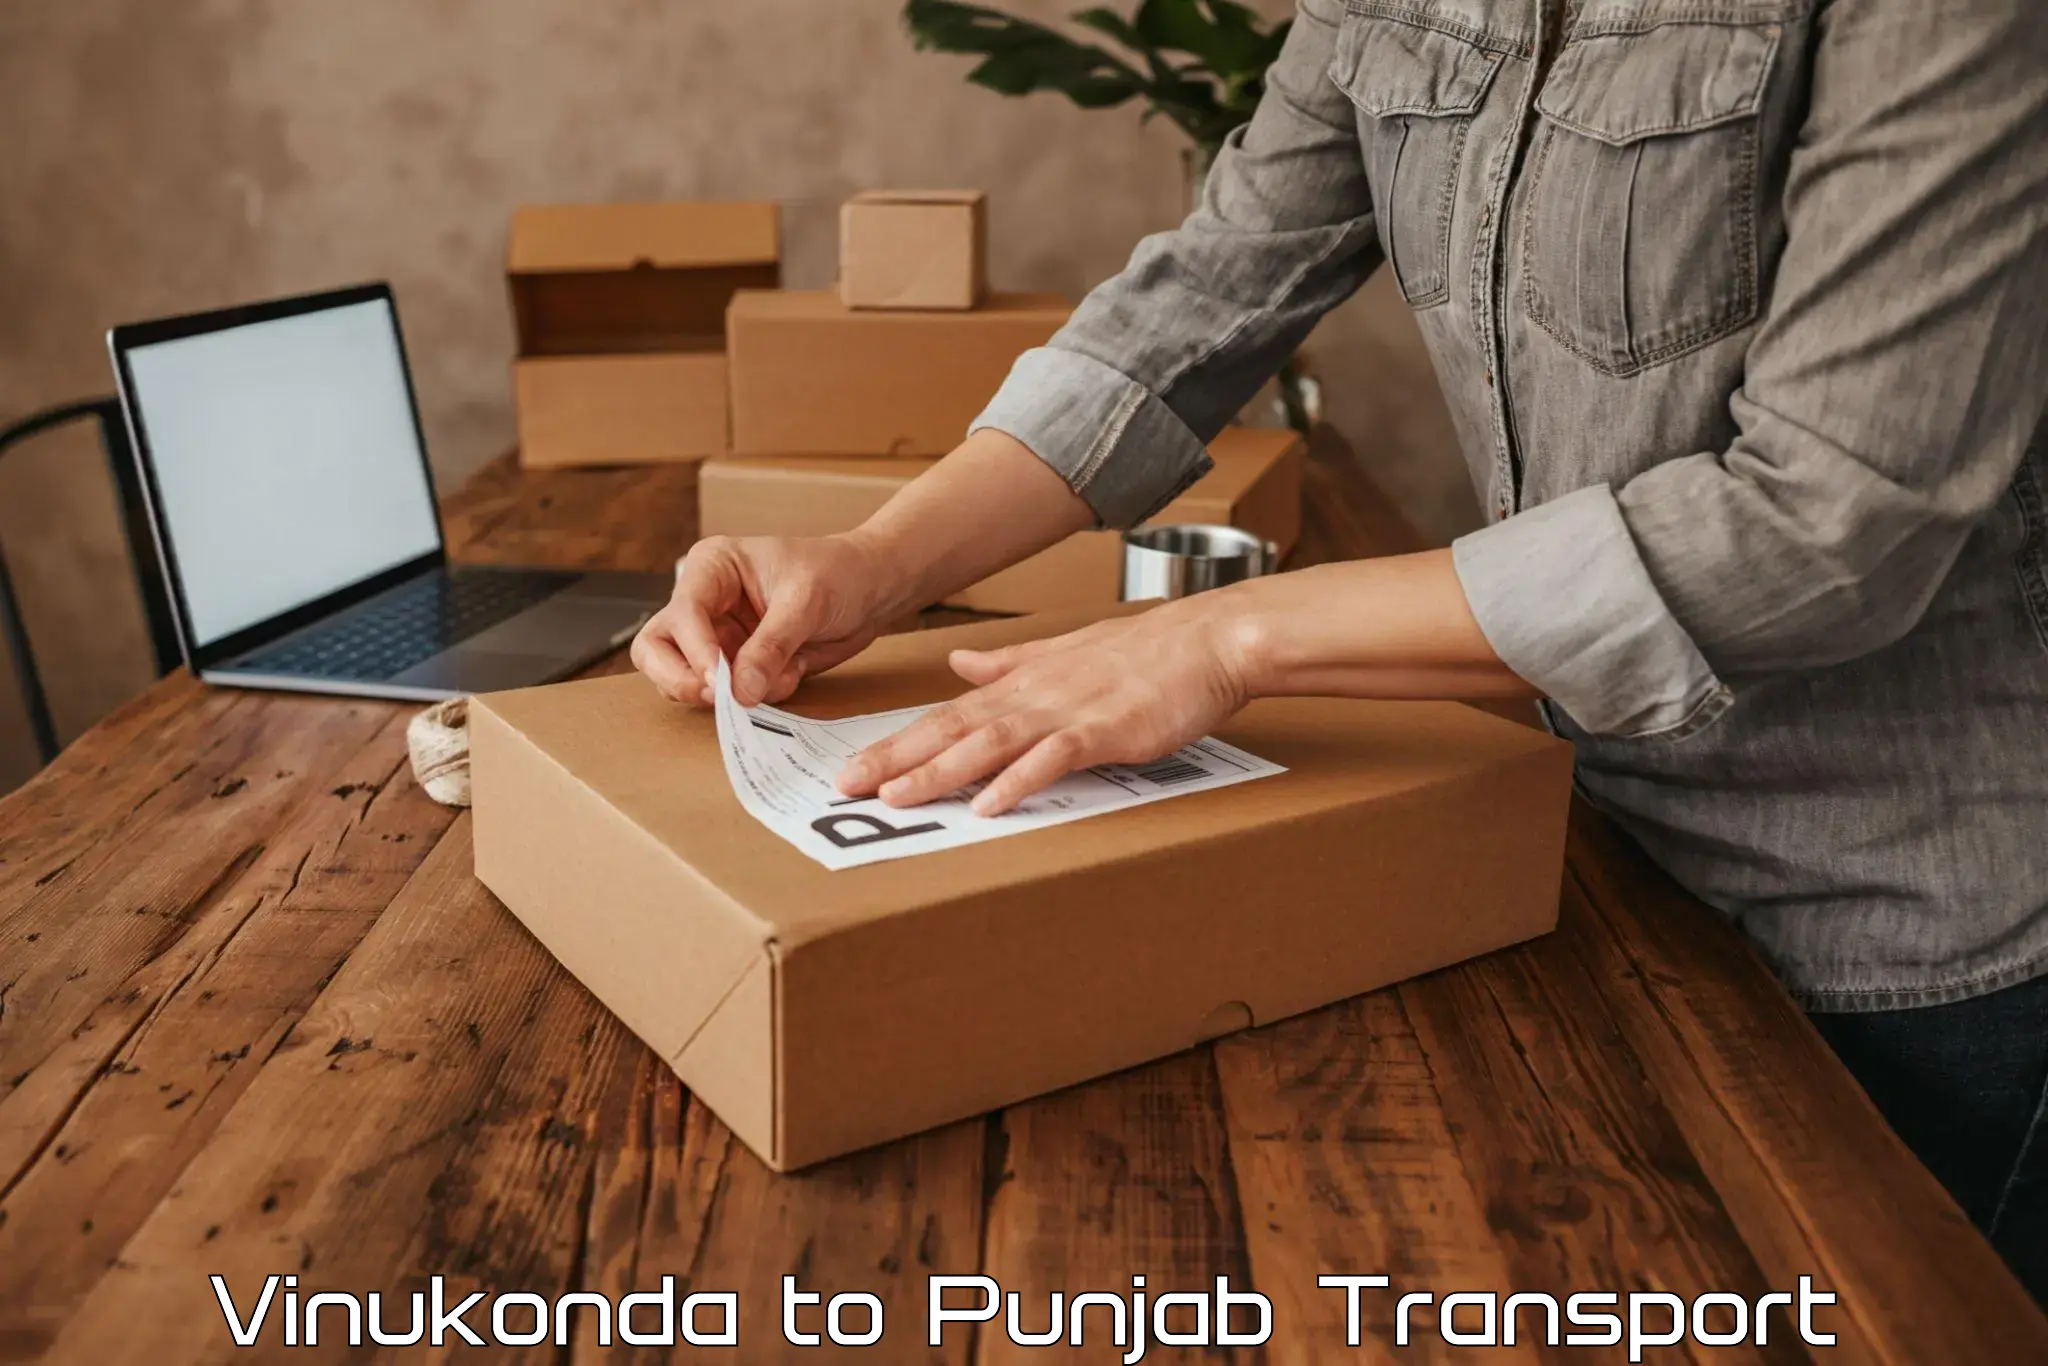 International cargo transportation services Vinukonda to Rupnagar